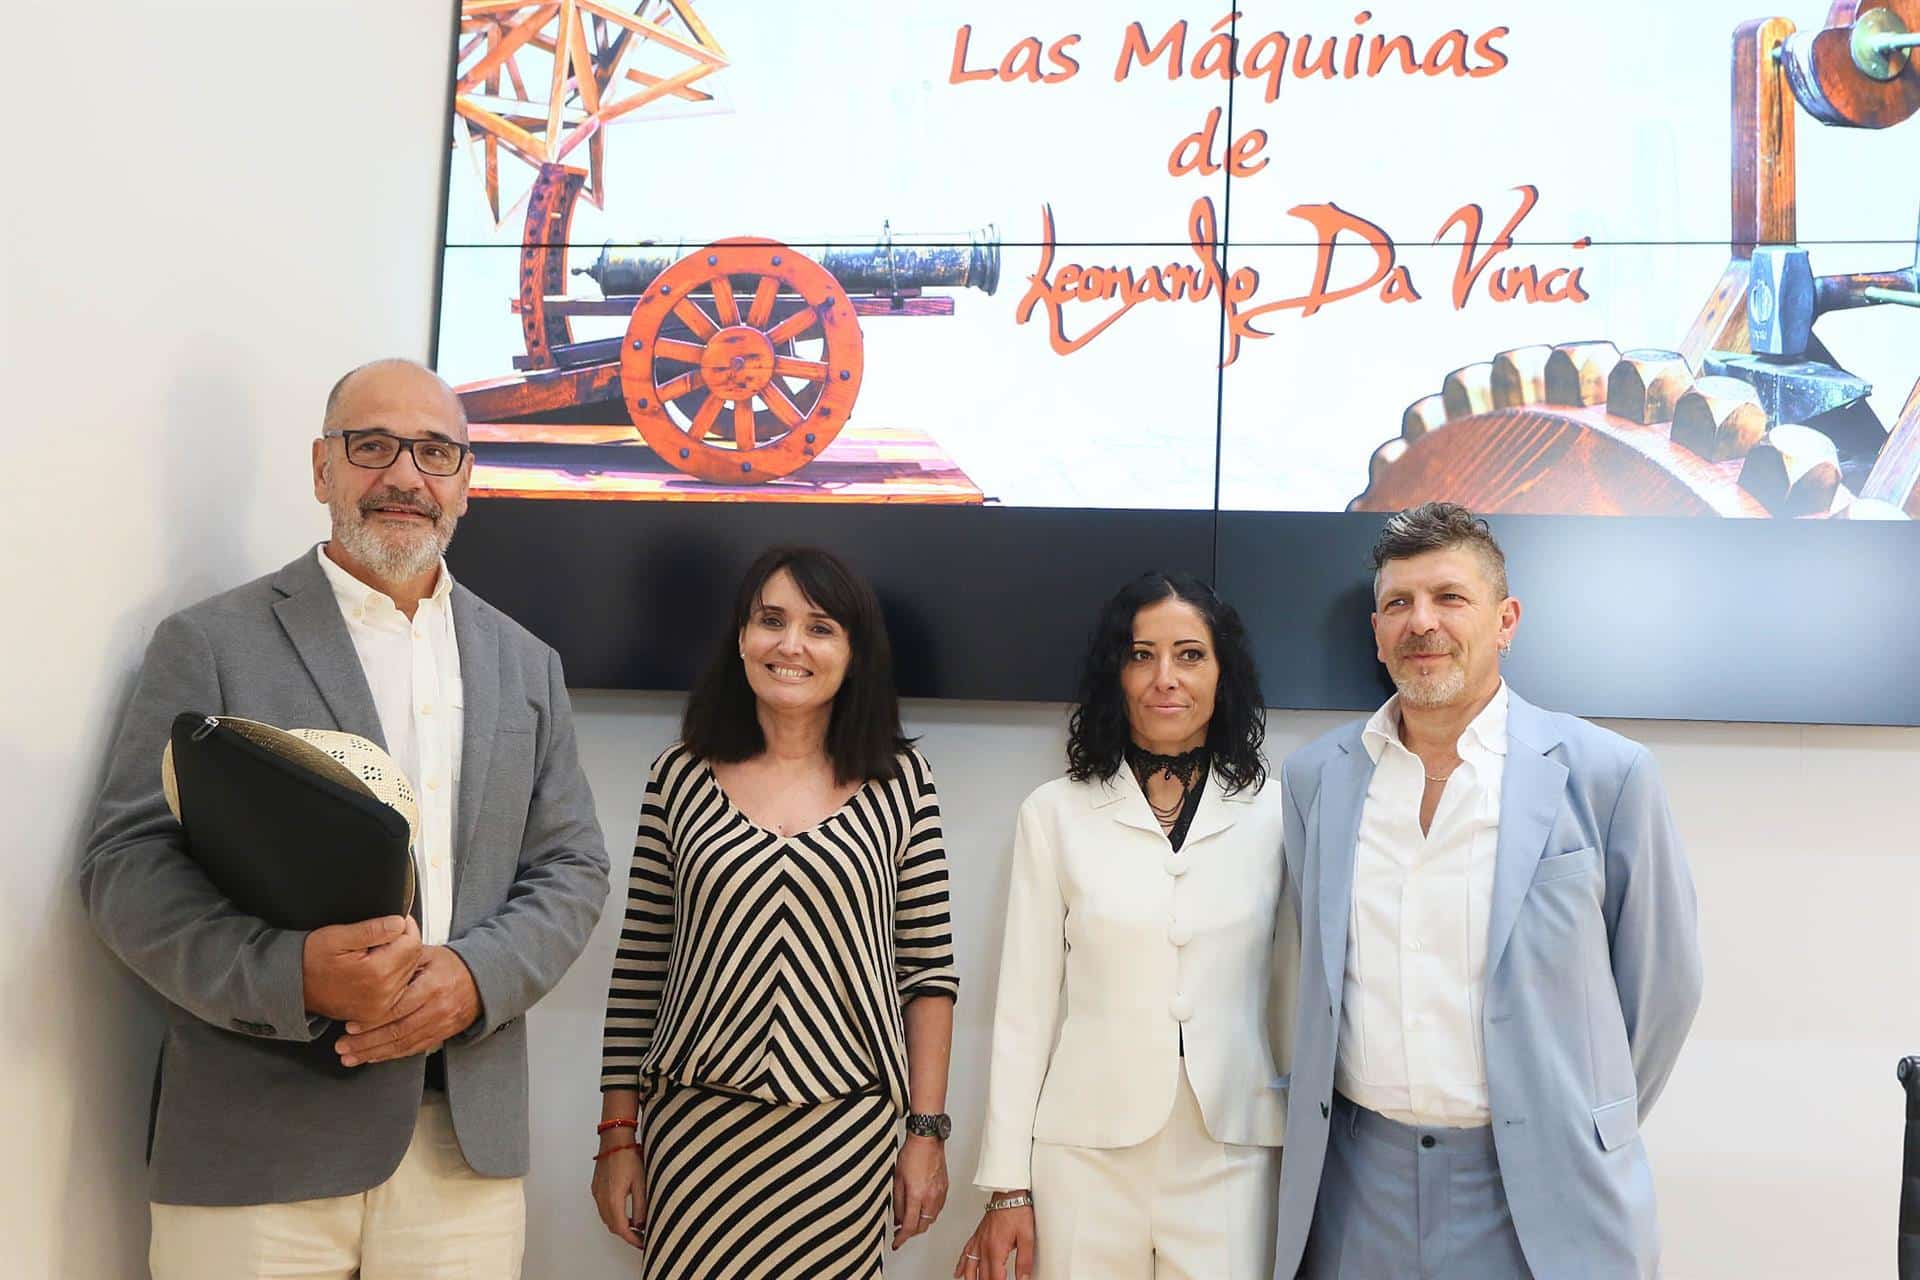 La Diputación de Alicante abre sus puertas a una muestra interactiva de inventos y reproducciones de Da Vinci